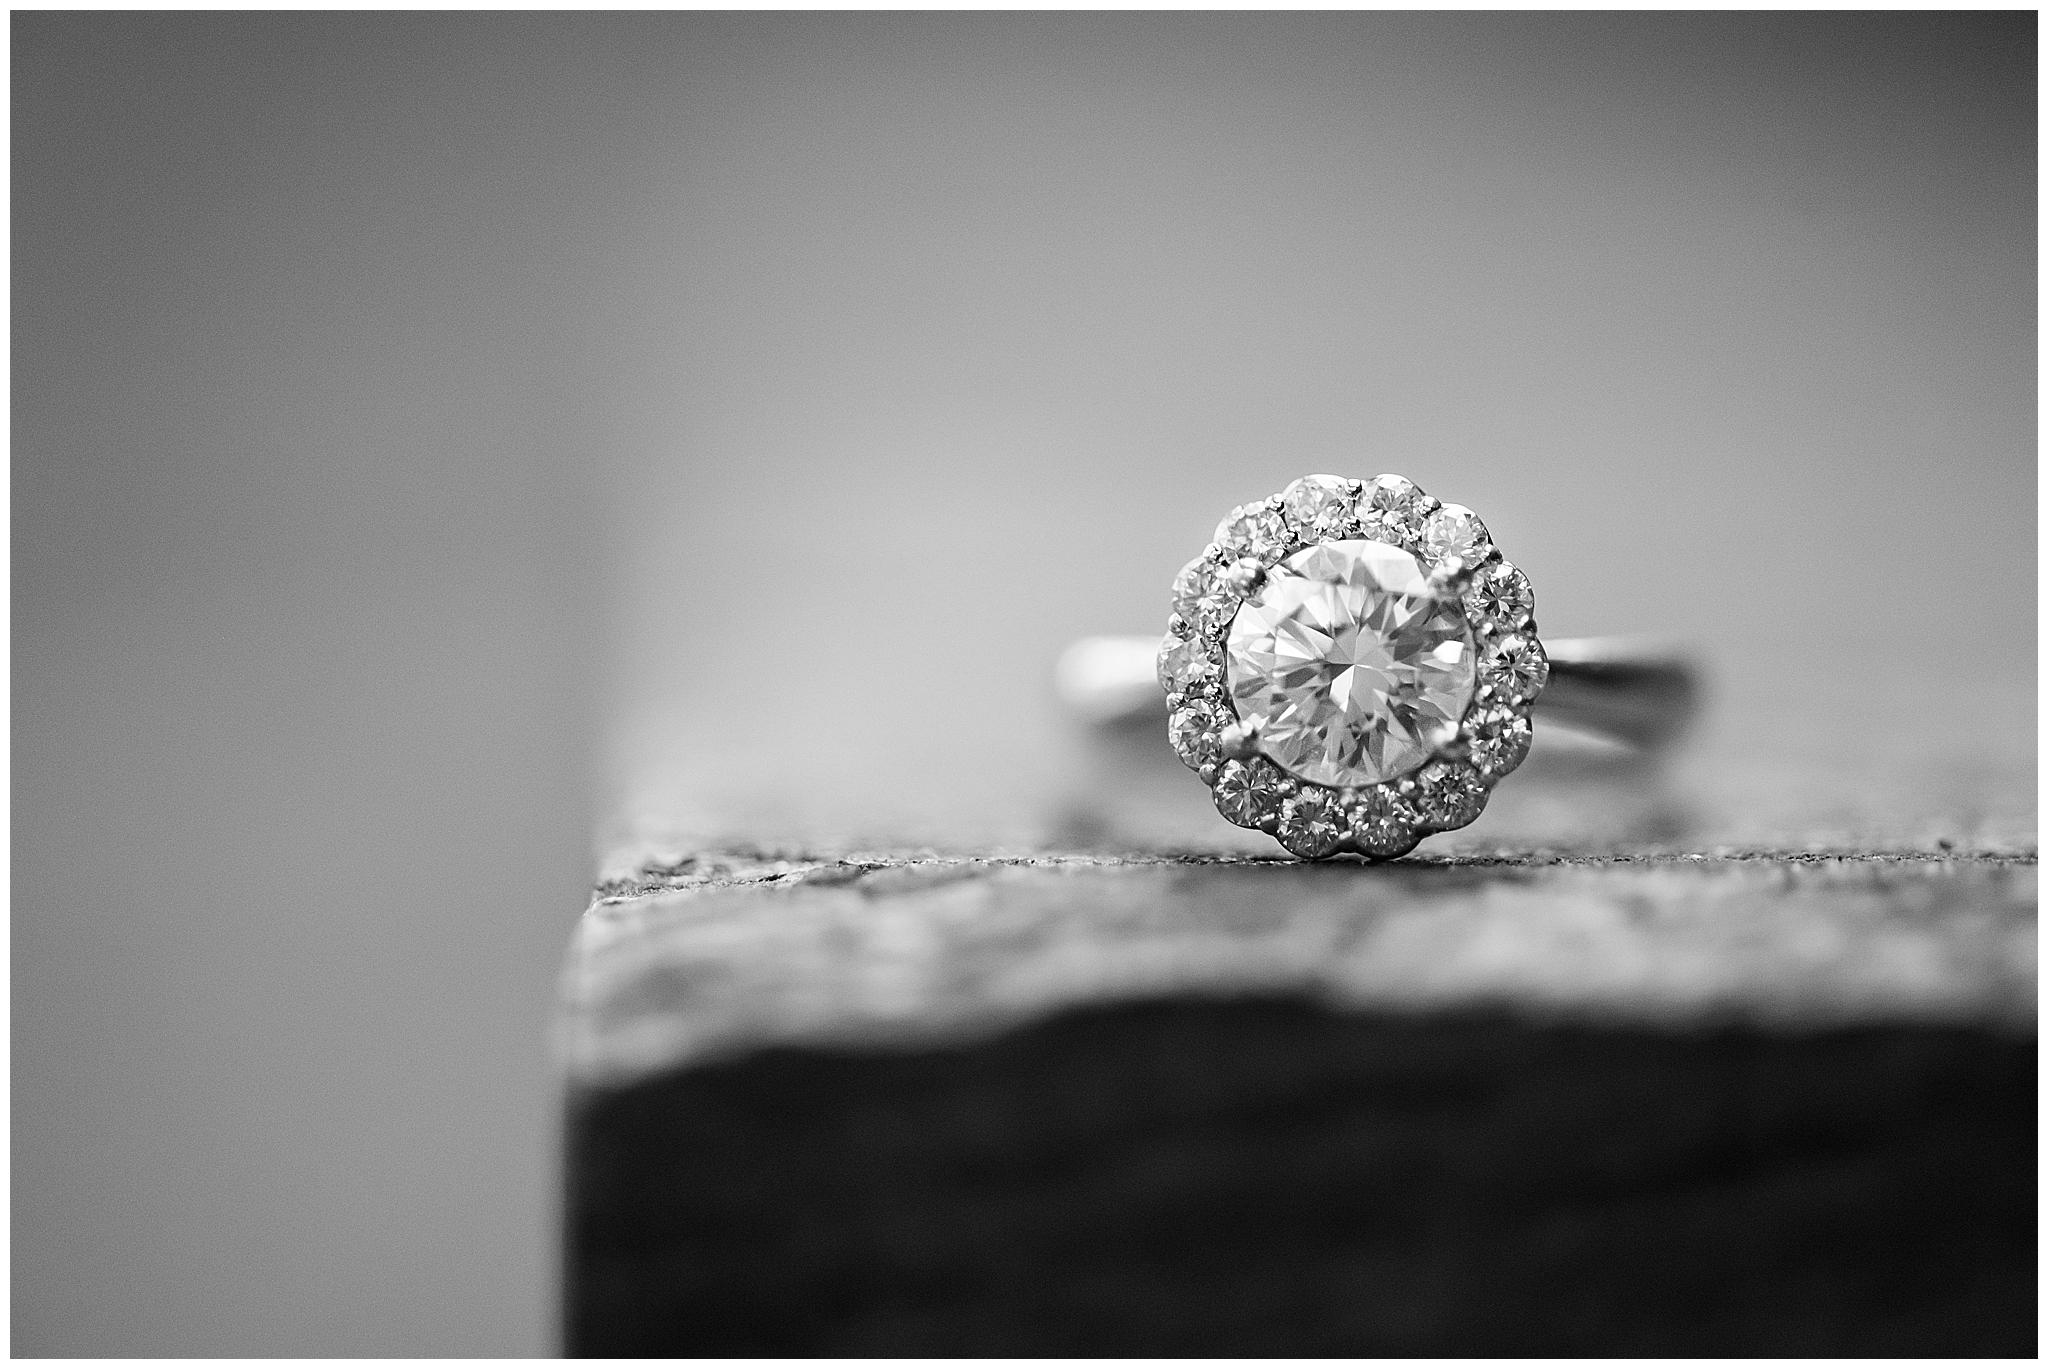 Engagement ring detail shot